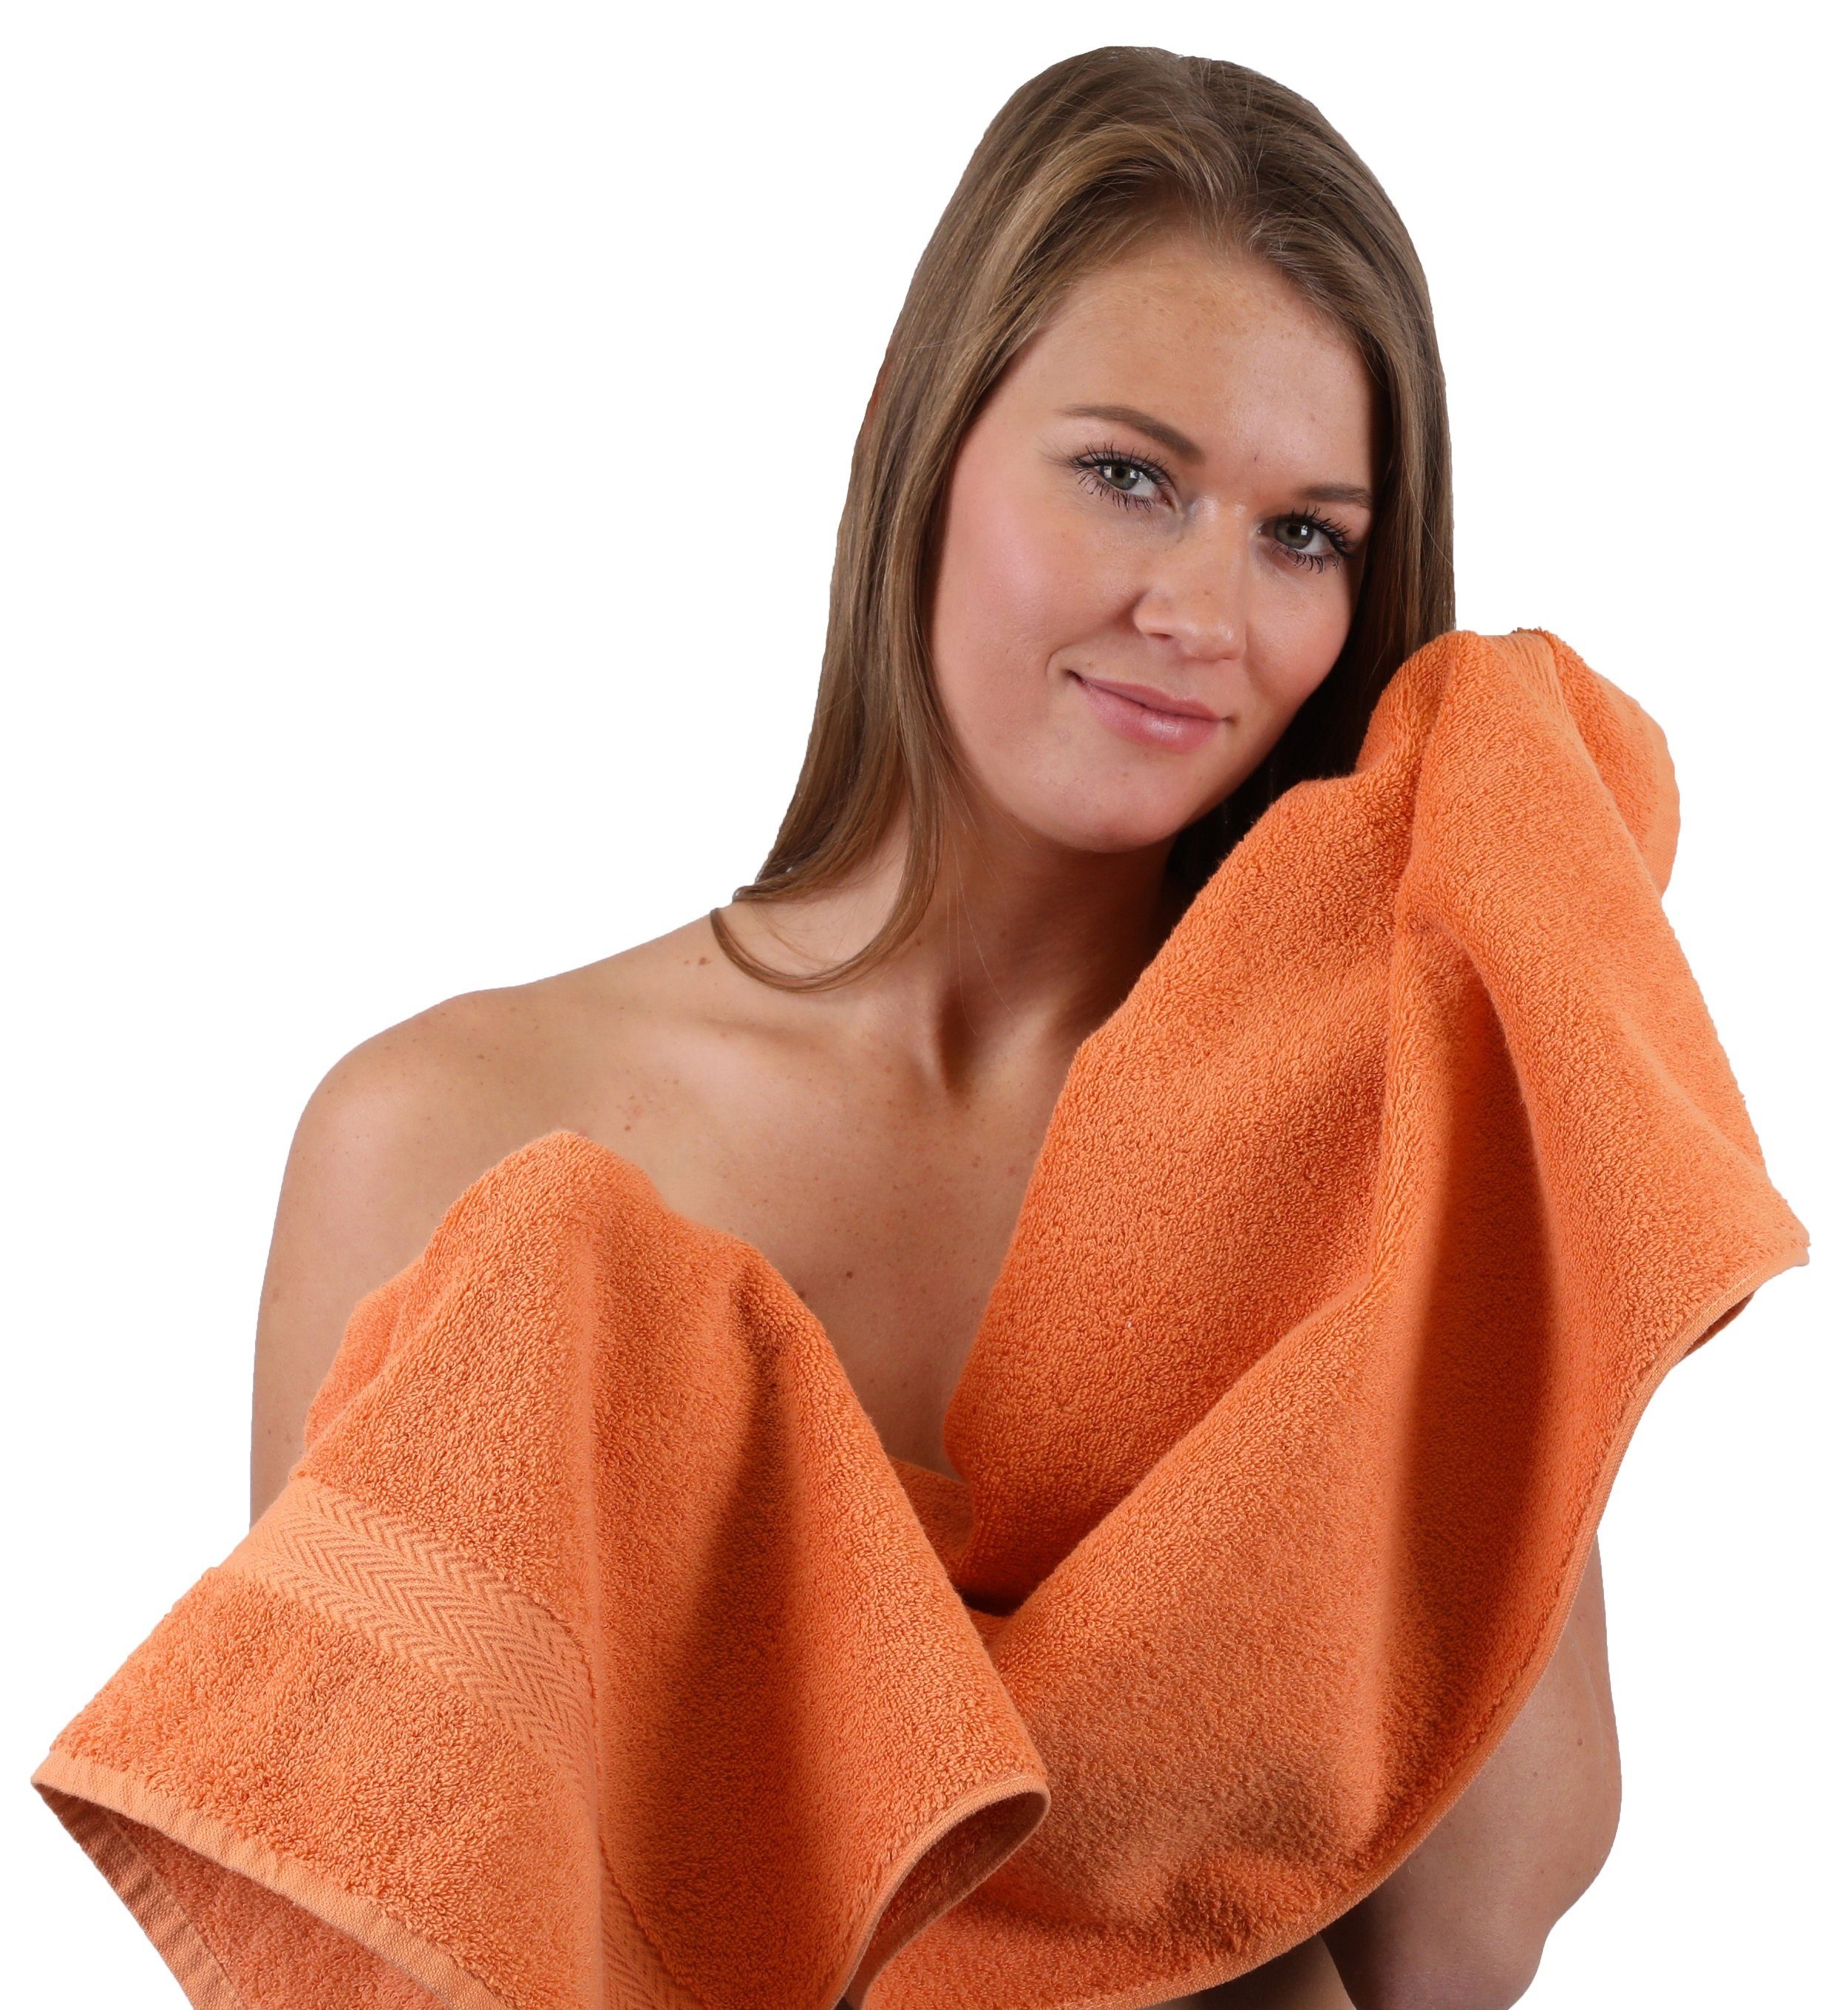 Orange Farbe & Betz 10-TLG. (10-tlg) Handtuch-Set Handtuch Baumwolle, 100% Weiß, Set Premium